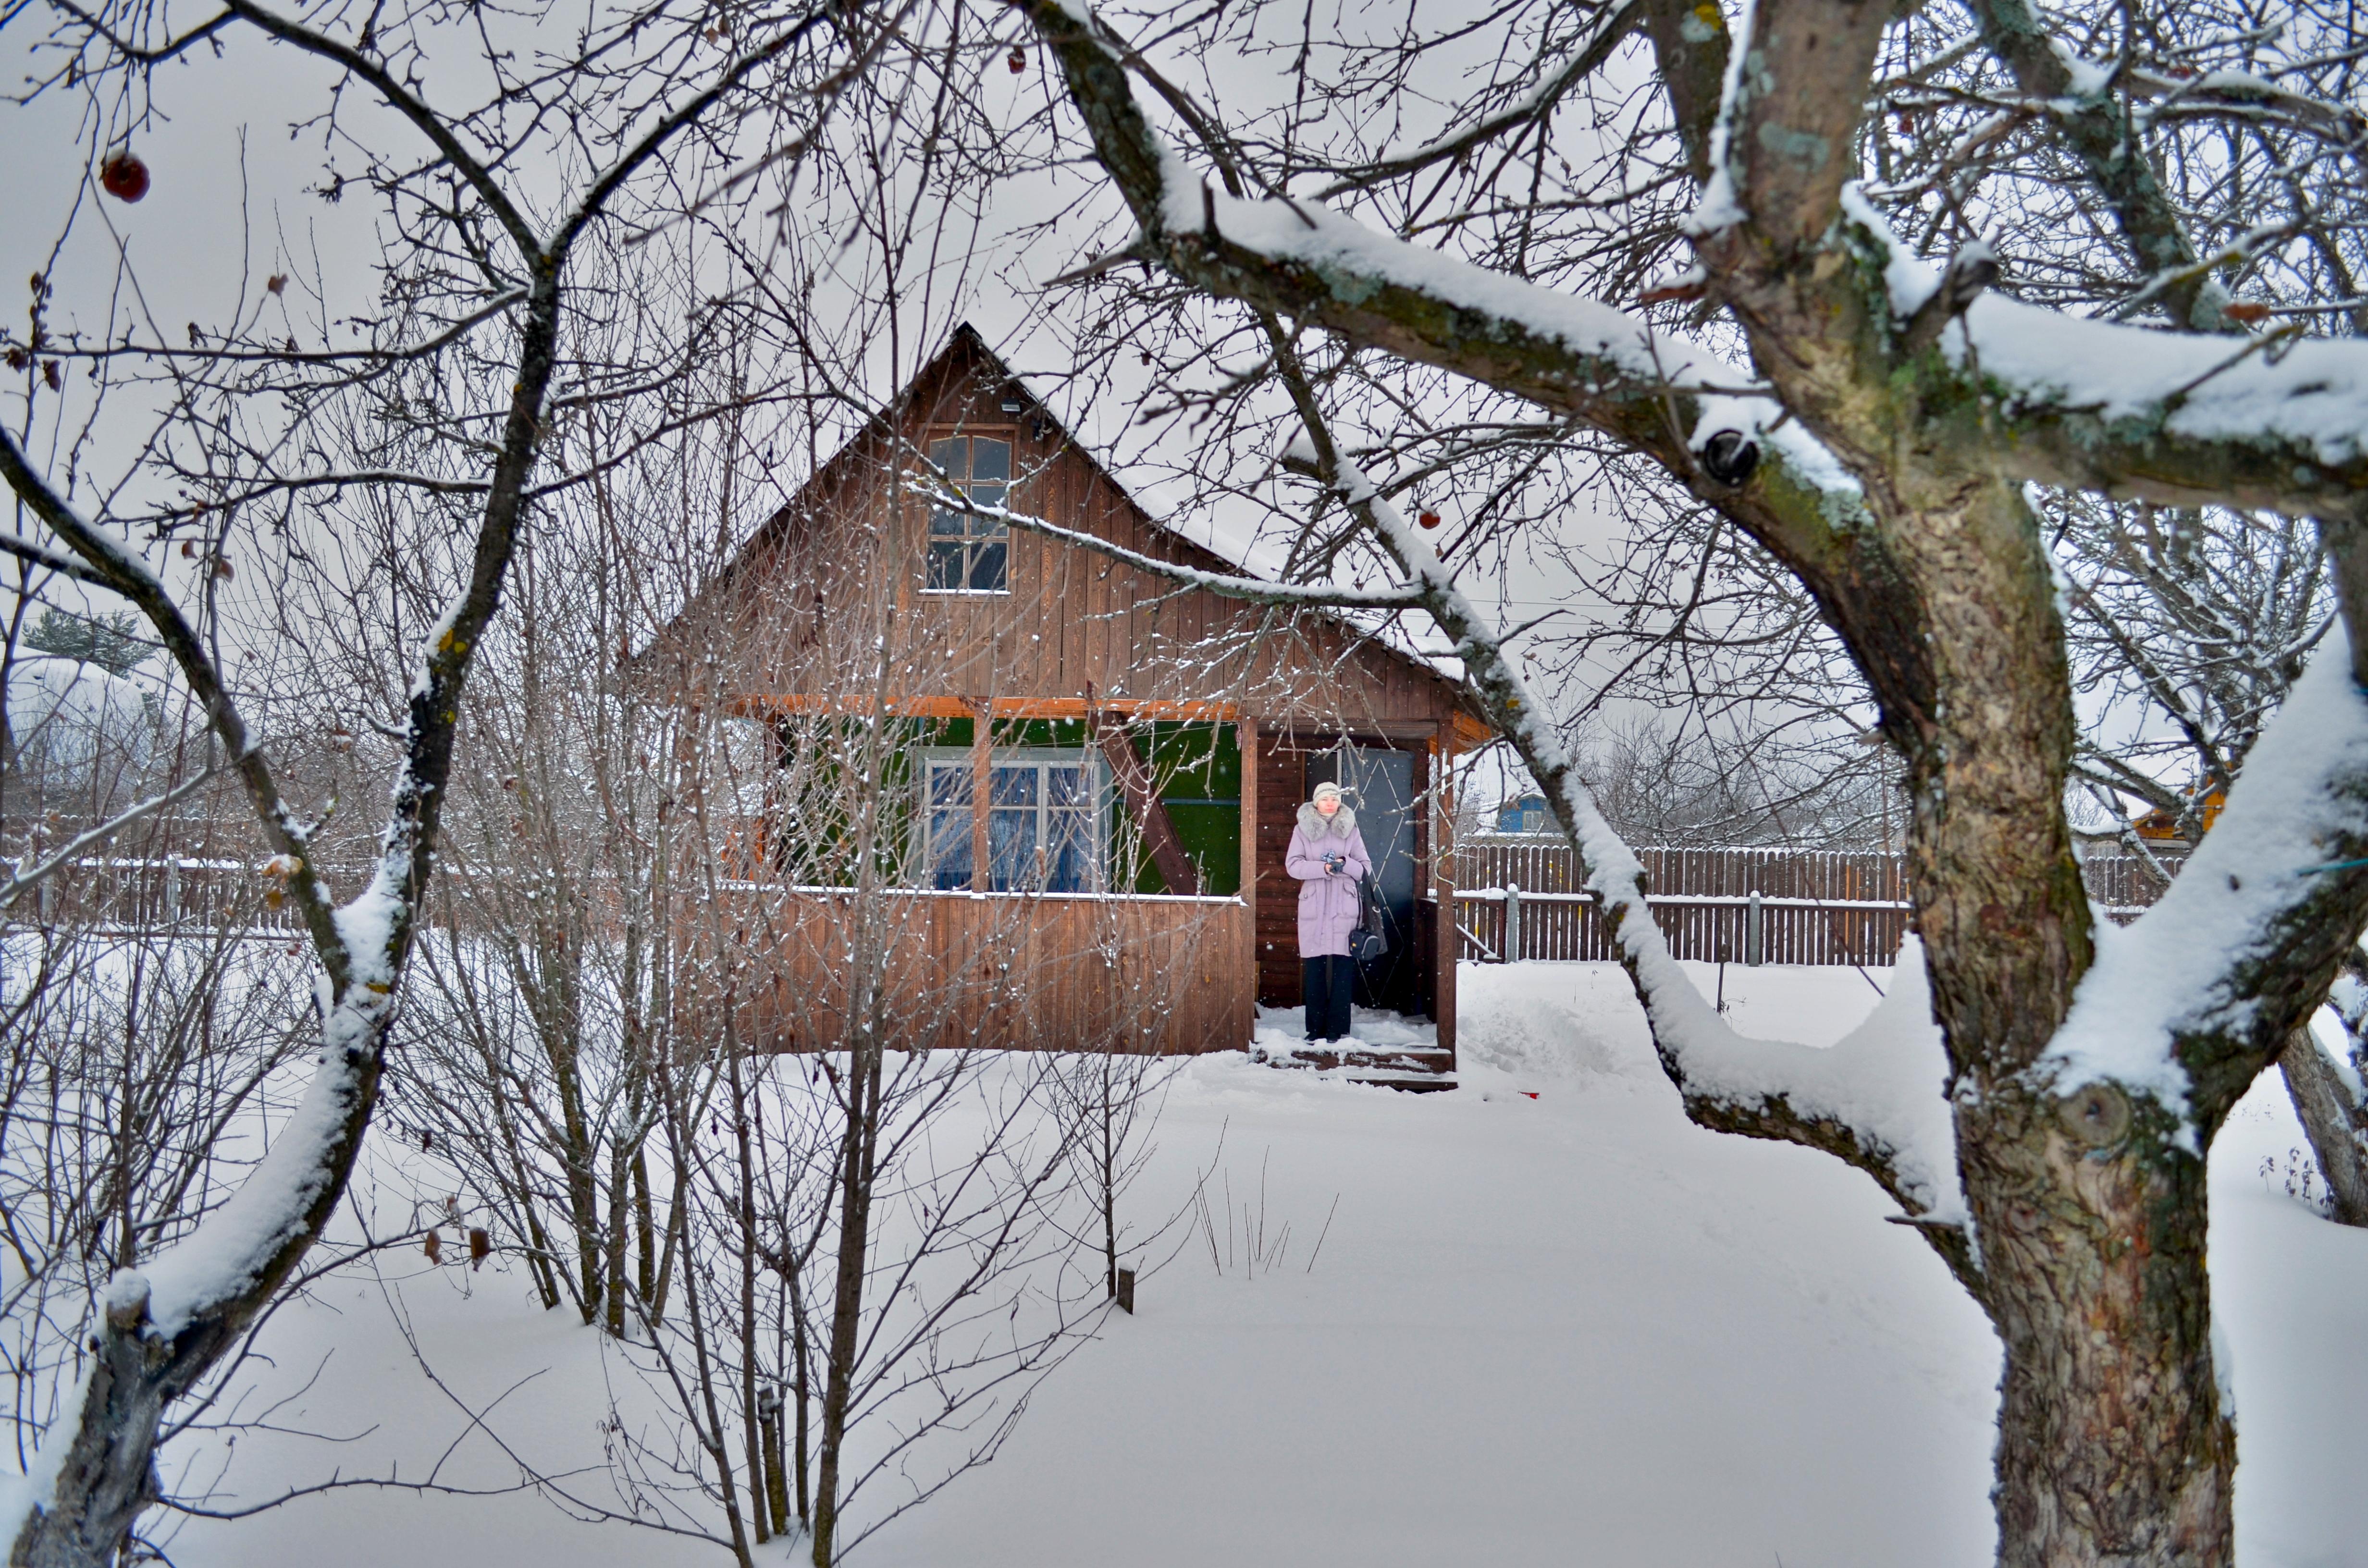 Дачи в зимнем пейзаже: фотографии с возможностью выбора формата | Дачи зимой  Фото №793419 скачать